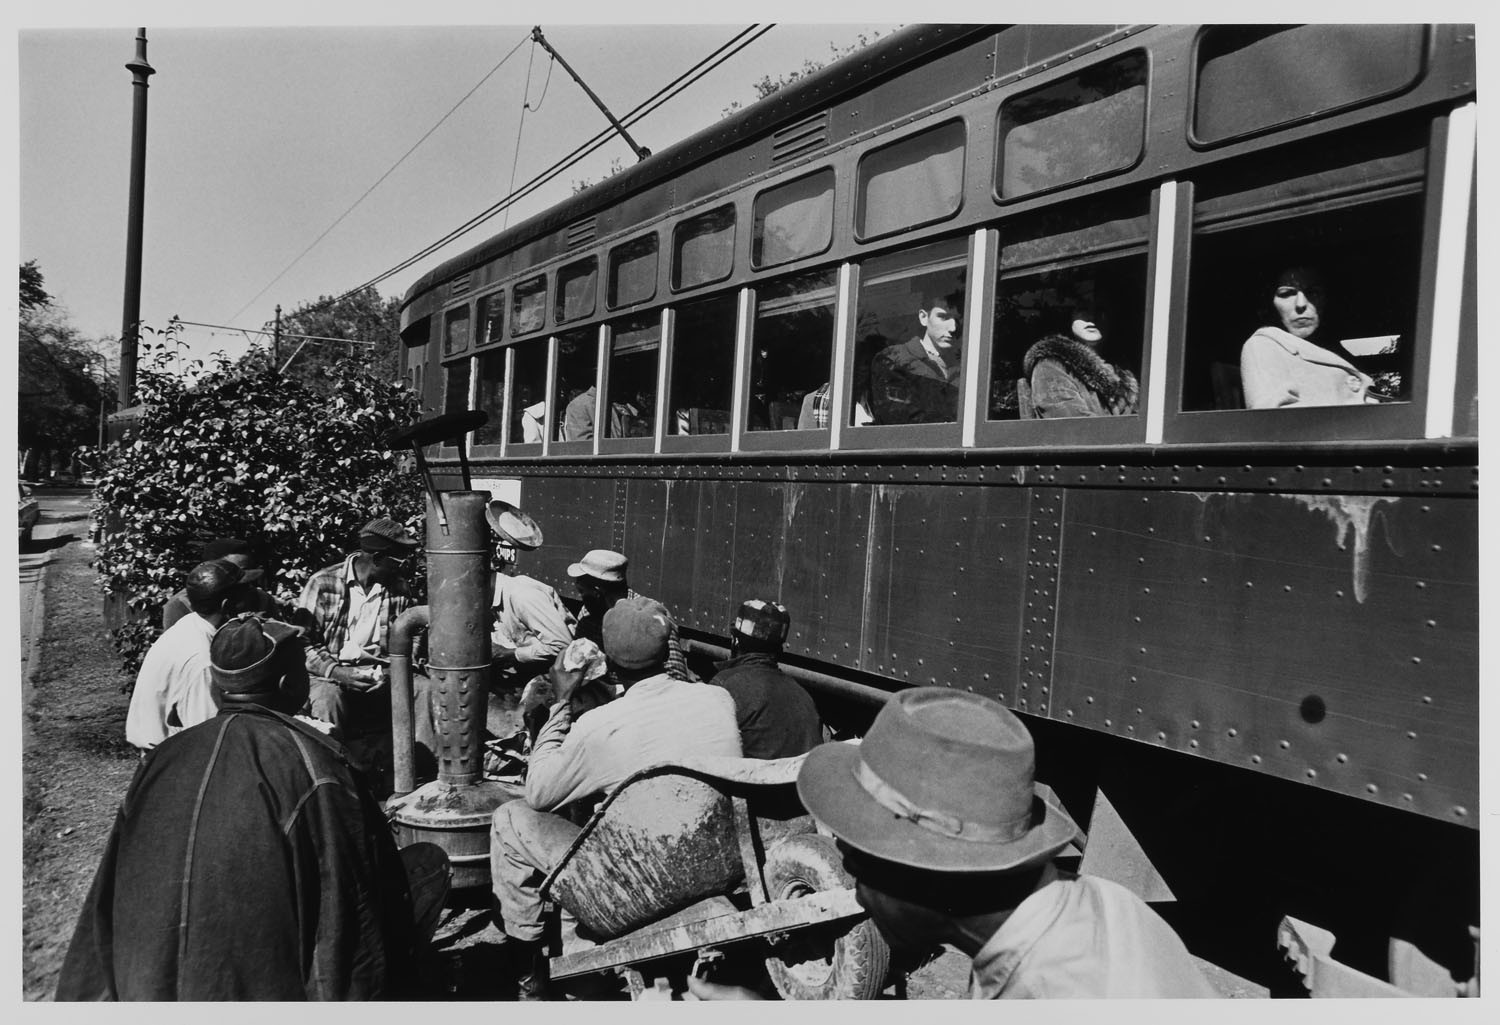 Рабочие и троллейбусы Новый Орлеан, 1965. Фотограф Леонард Фрид